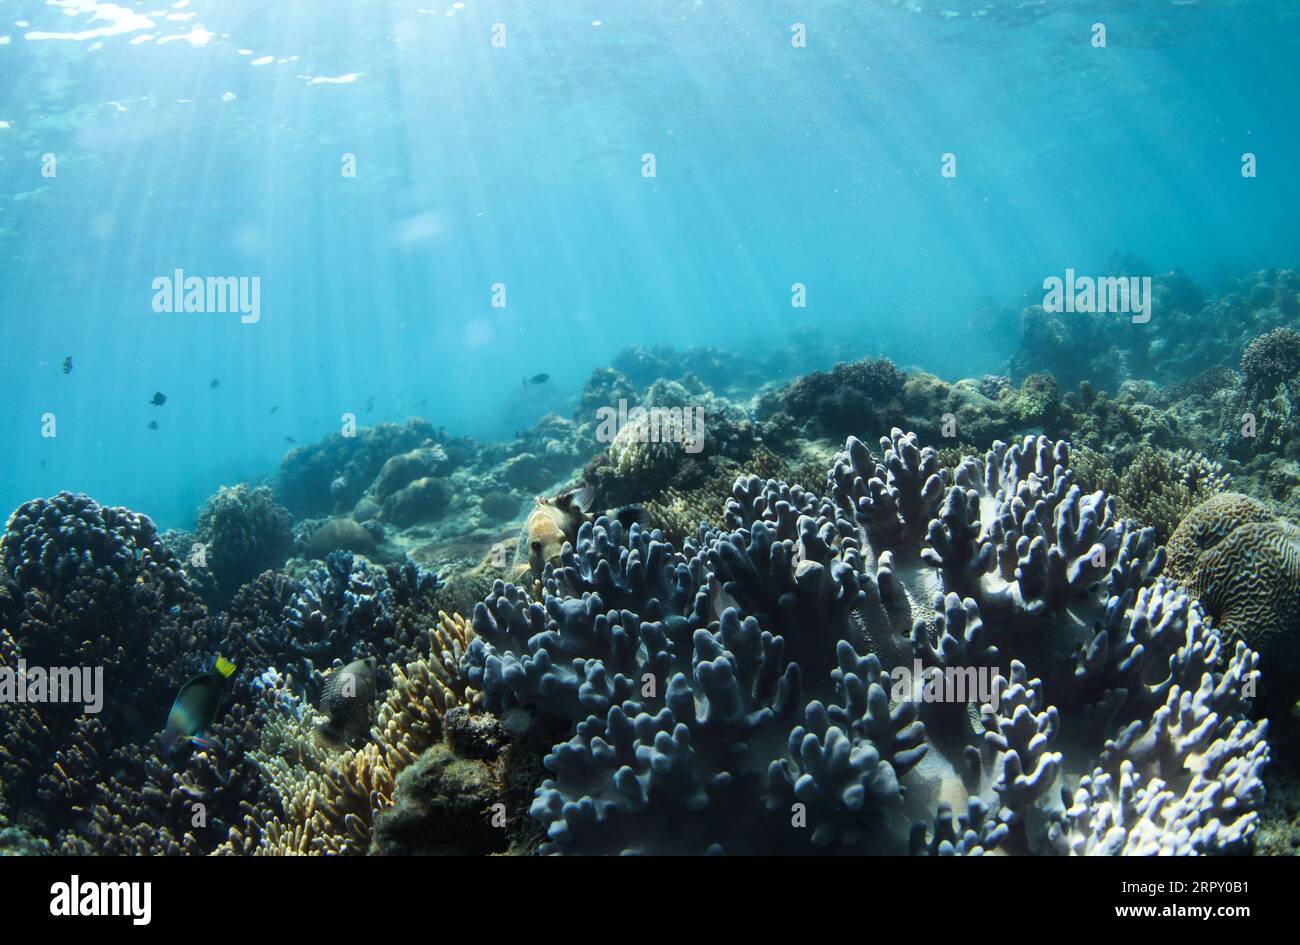 200608 -- HAIKOU, 8 juin 2020 -- une photo prise le 29 avril 2020 montre les coraux dans un ranch marin dans la zone maritime de l'île de Wuzhizhou à Sanya, dans la province de Hainan du sud de la Chine. Le ranch marin dans la zone maritime de l'île de Wuzhizhou à Sanya est le premier ranch marin tropical de Chine. Ces dernières années, le ranch marin a successivement procédé à la pose de récifs artificiels, à la restauration de l’environnement marin et à la transplantation de coraux, favorisant progressivement la protection et la restauration de l’écosystème marin. À la fin de 2019, un total de 1 526 récifs artificiels de pêche de divers types, 21 récifs de navires et un b Banque D'Images